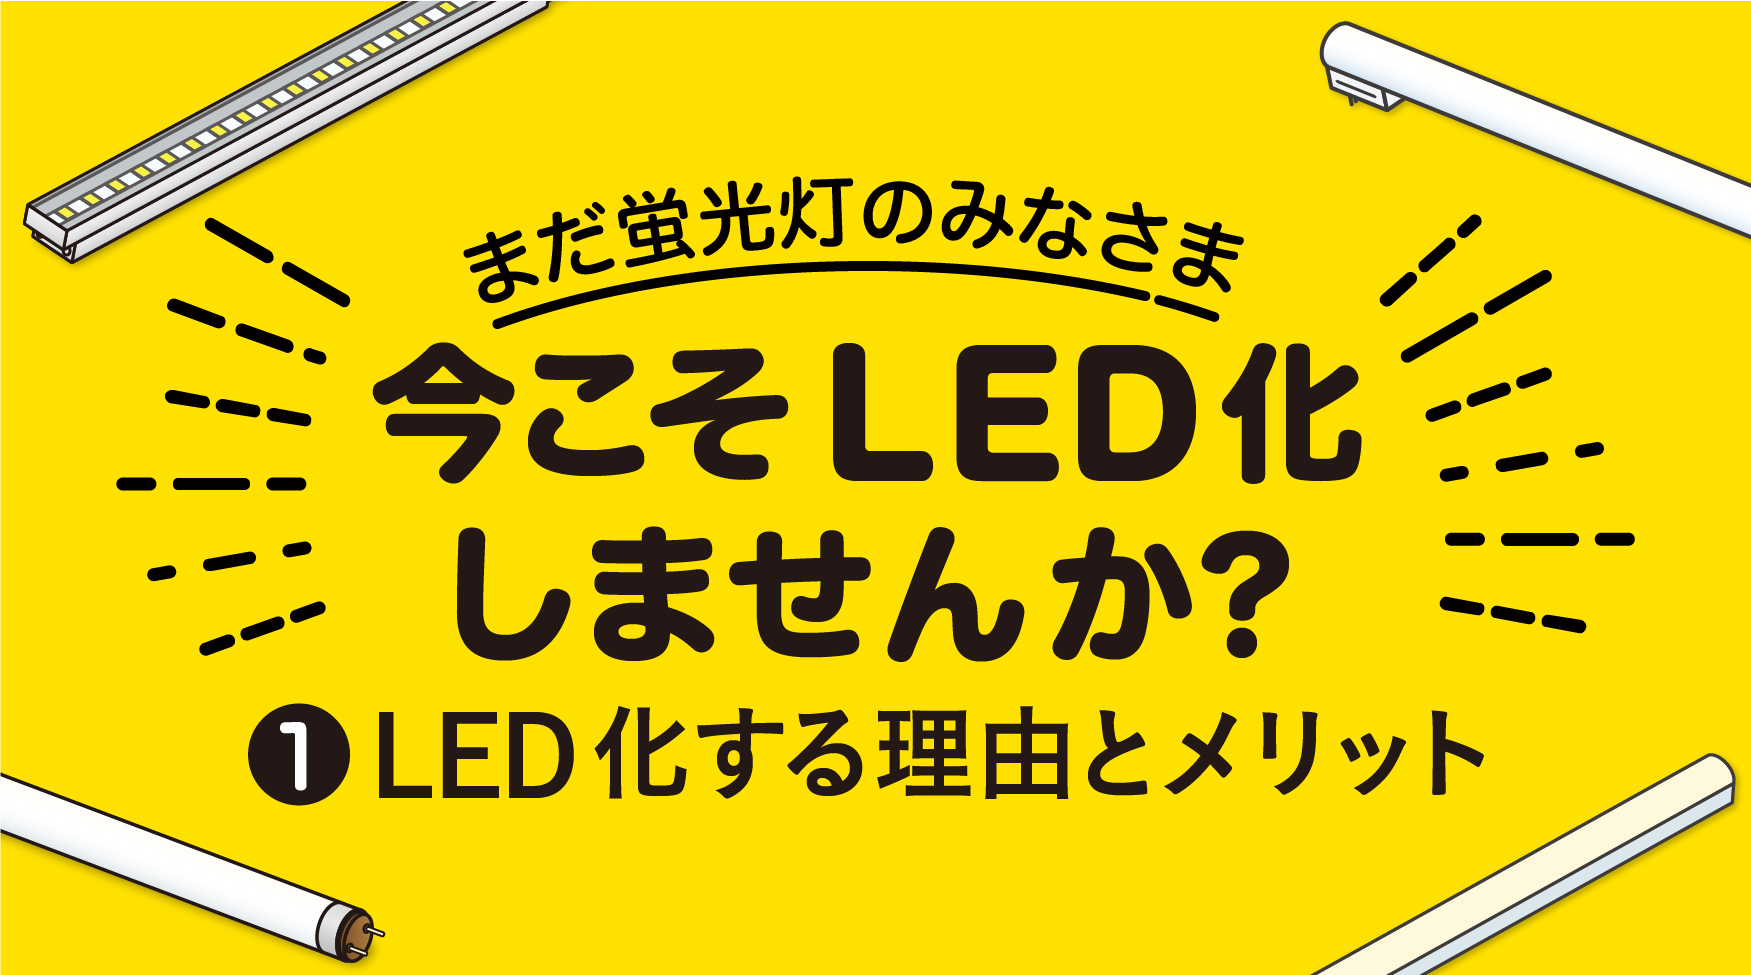 蛍光灯→LED置き換えのご提案 その❶ 〜いま蛍光灯を見直す理由とLED化するメリット〜